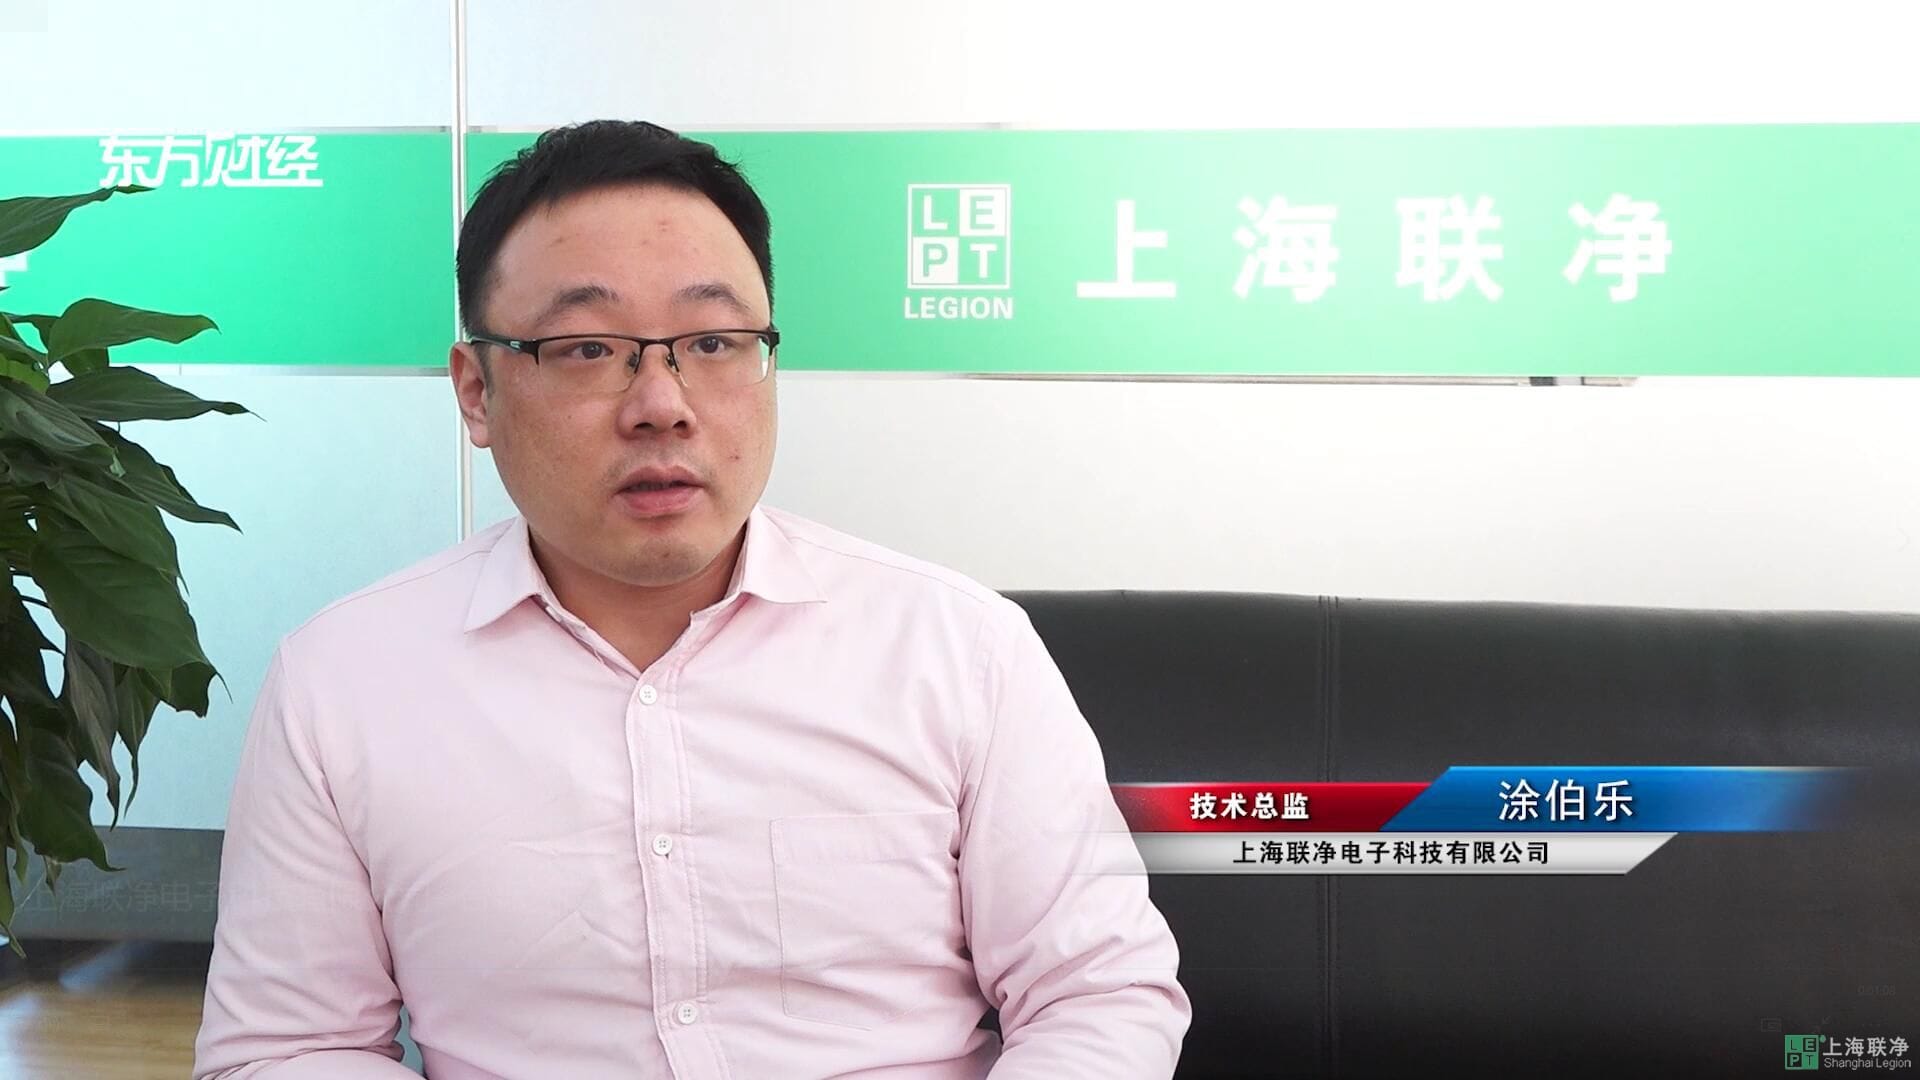 广特播报发布上海电视台播出—上海联净电子科技有限公司